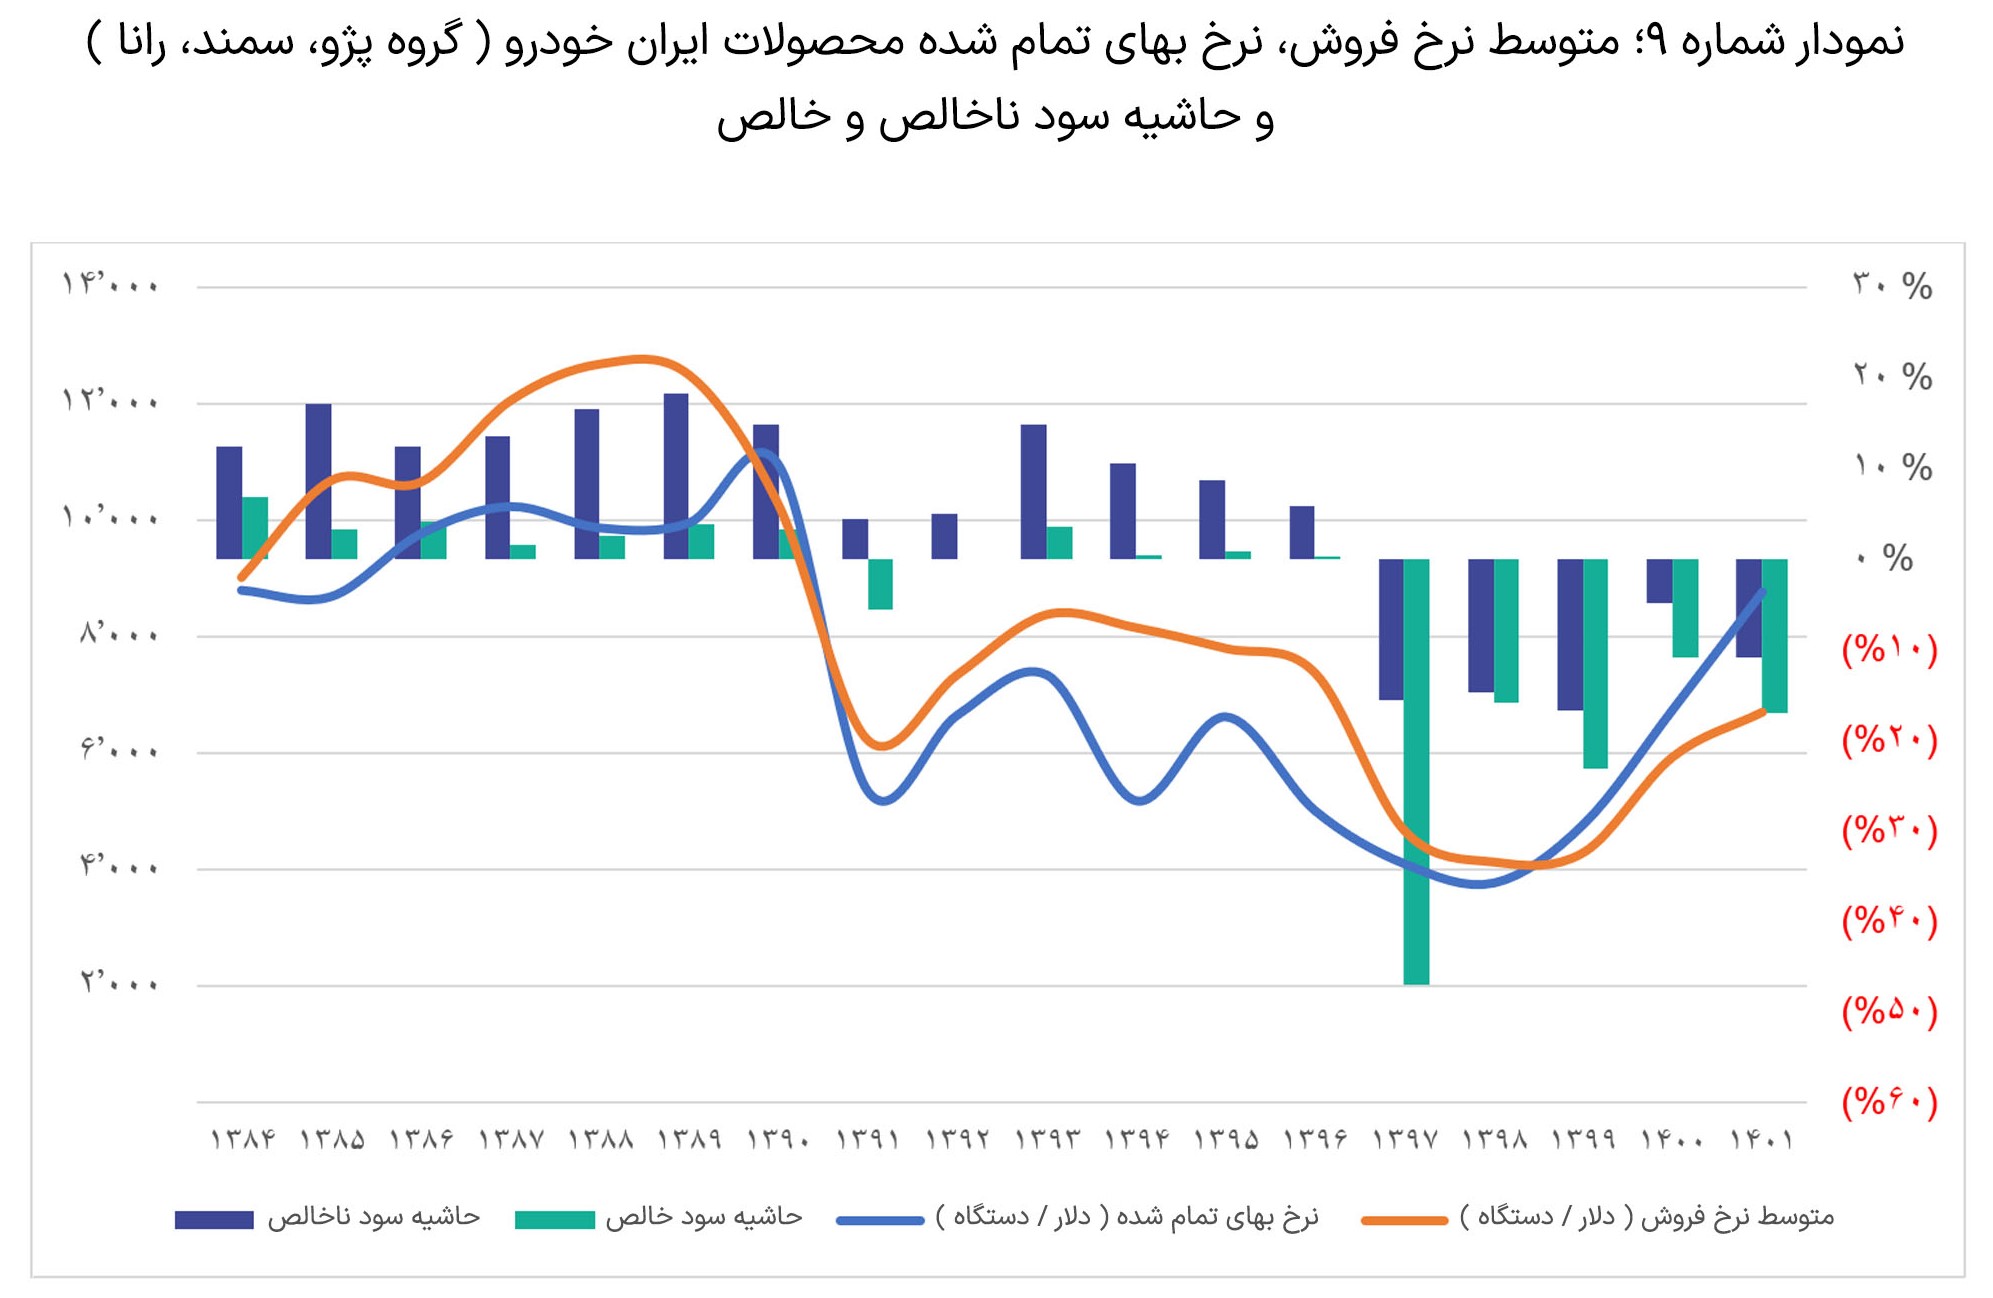 بررسی-عملکرد-دو-شرکت-ایران-خودرو-و-سایپا5-3-slide-03-(1).jpg